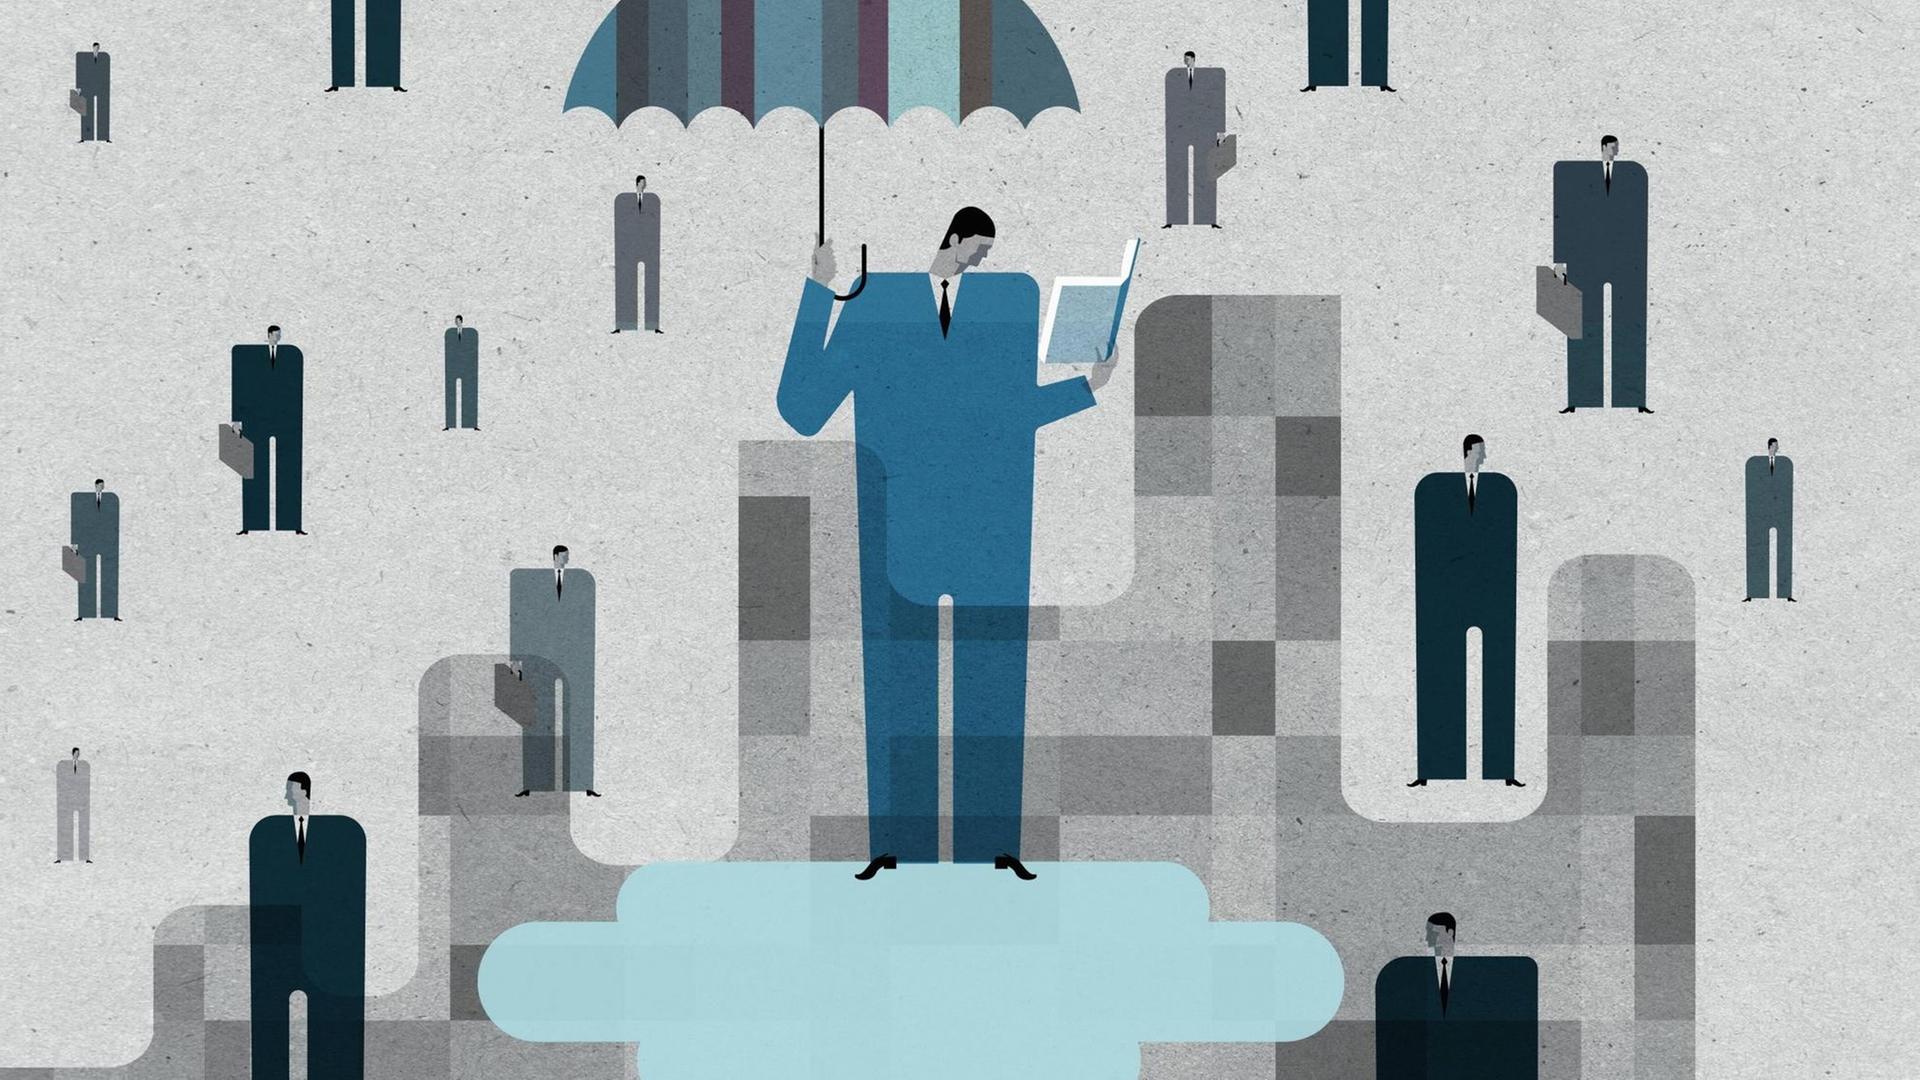 Illustration: Ein Mann im blauen Anzug steht auf einer Wolke, hält einen Regenschirm über sicht und liest in einem Buch. Außerdem sind andere, kleinere Männer in schwarzen bis grauen Anzügen mit Aktentaschen zu sehen, die wie Tropfen um ihn herum wirken.